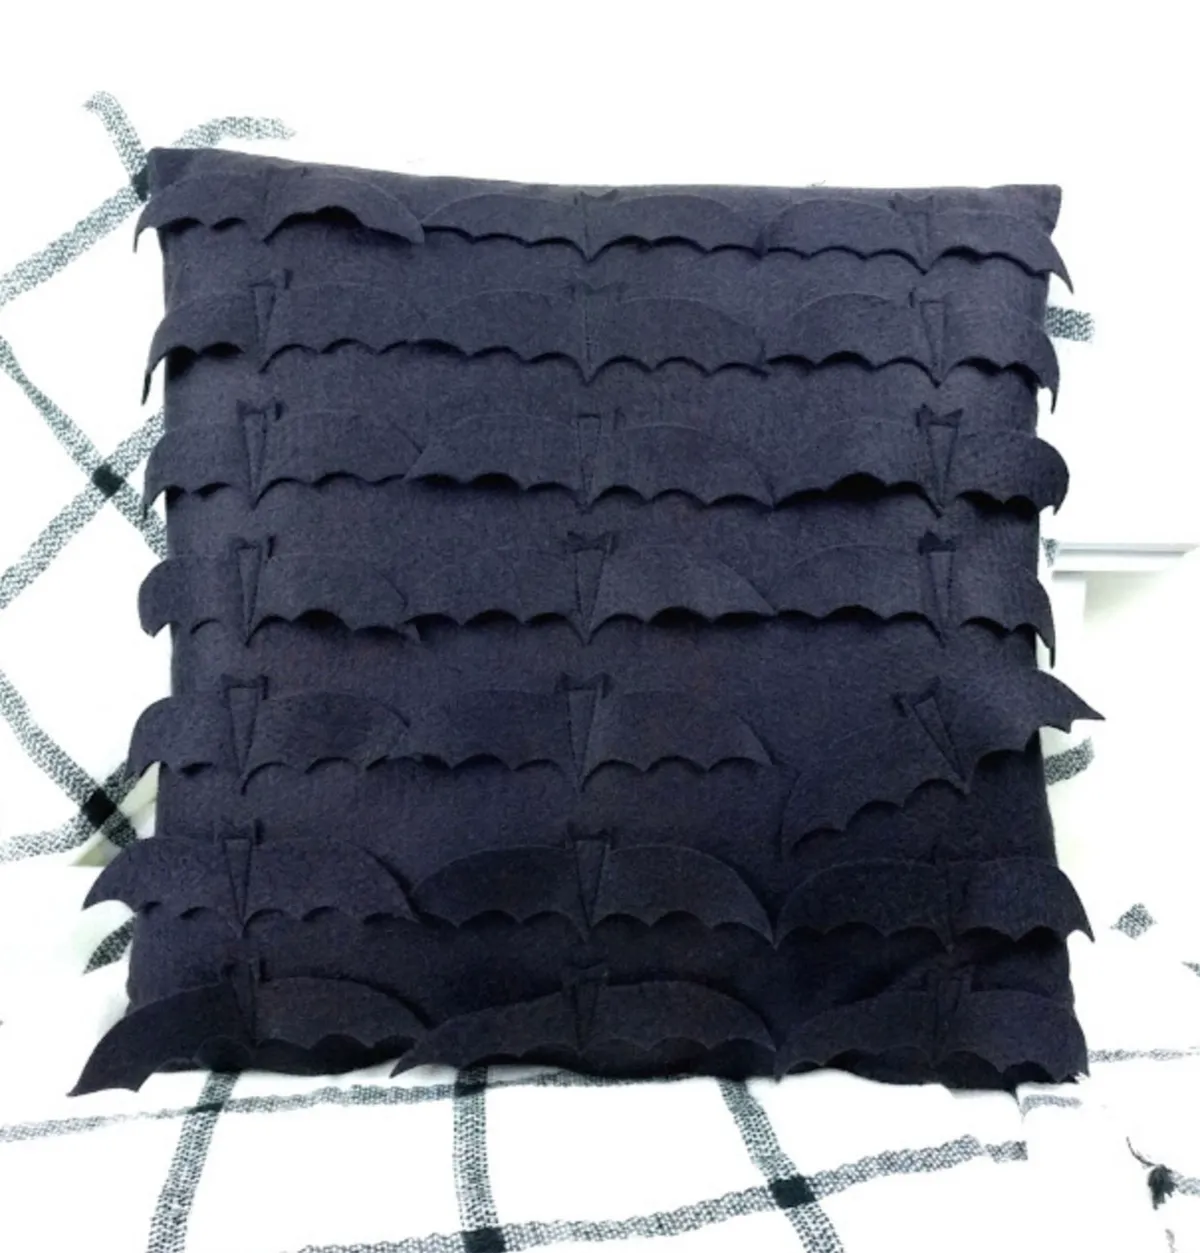 Halloween sewing patterns – Batty felt pillow